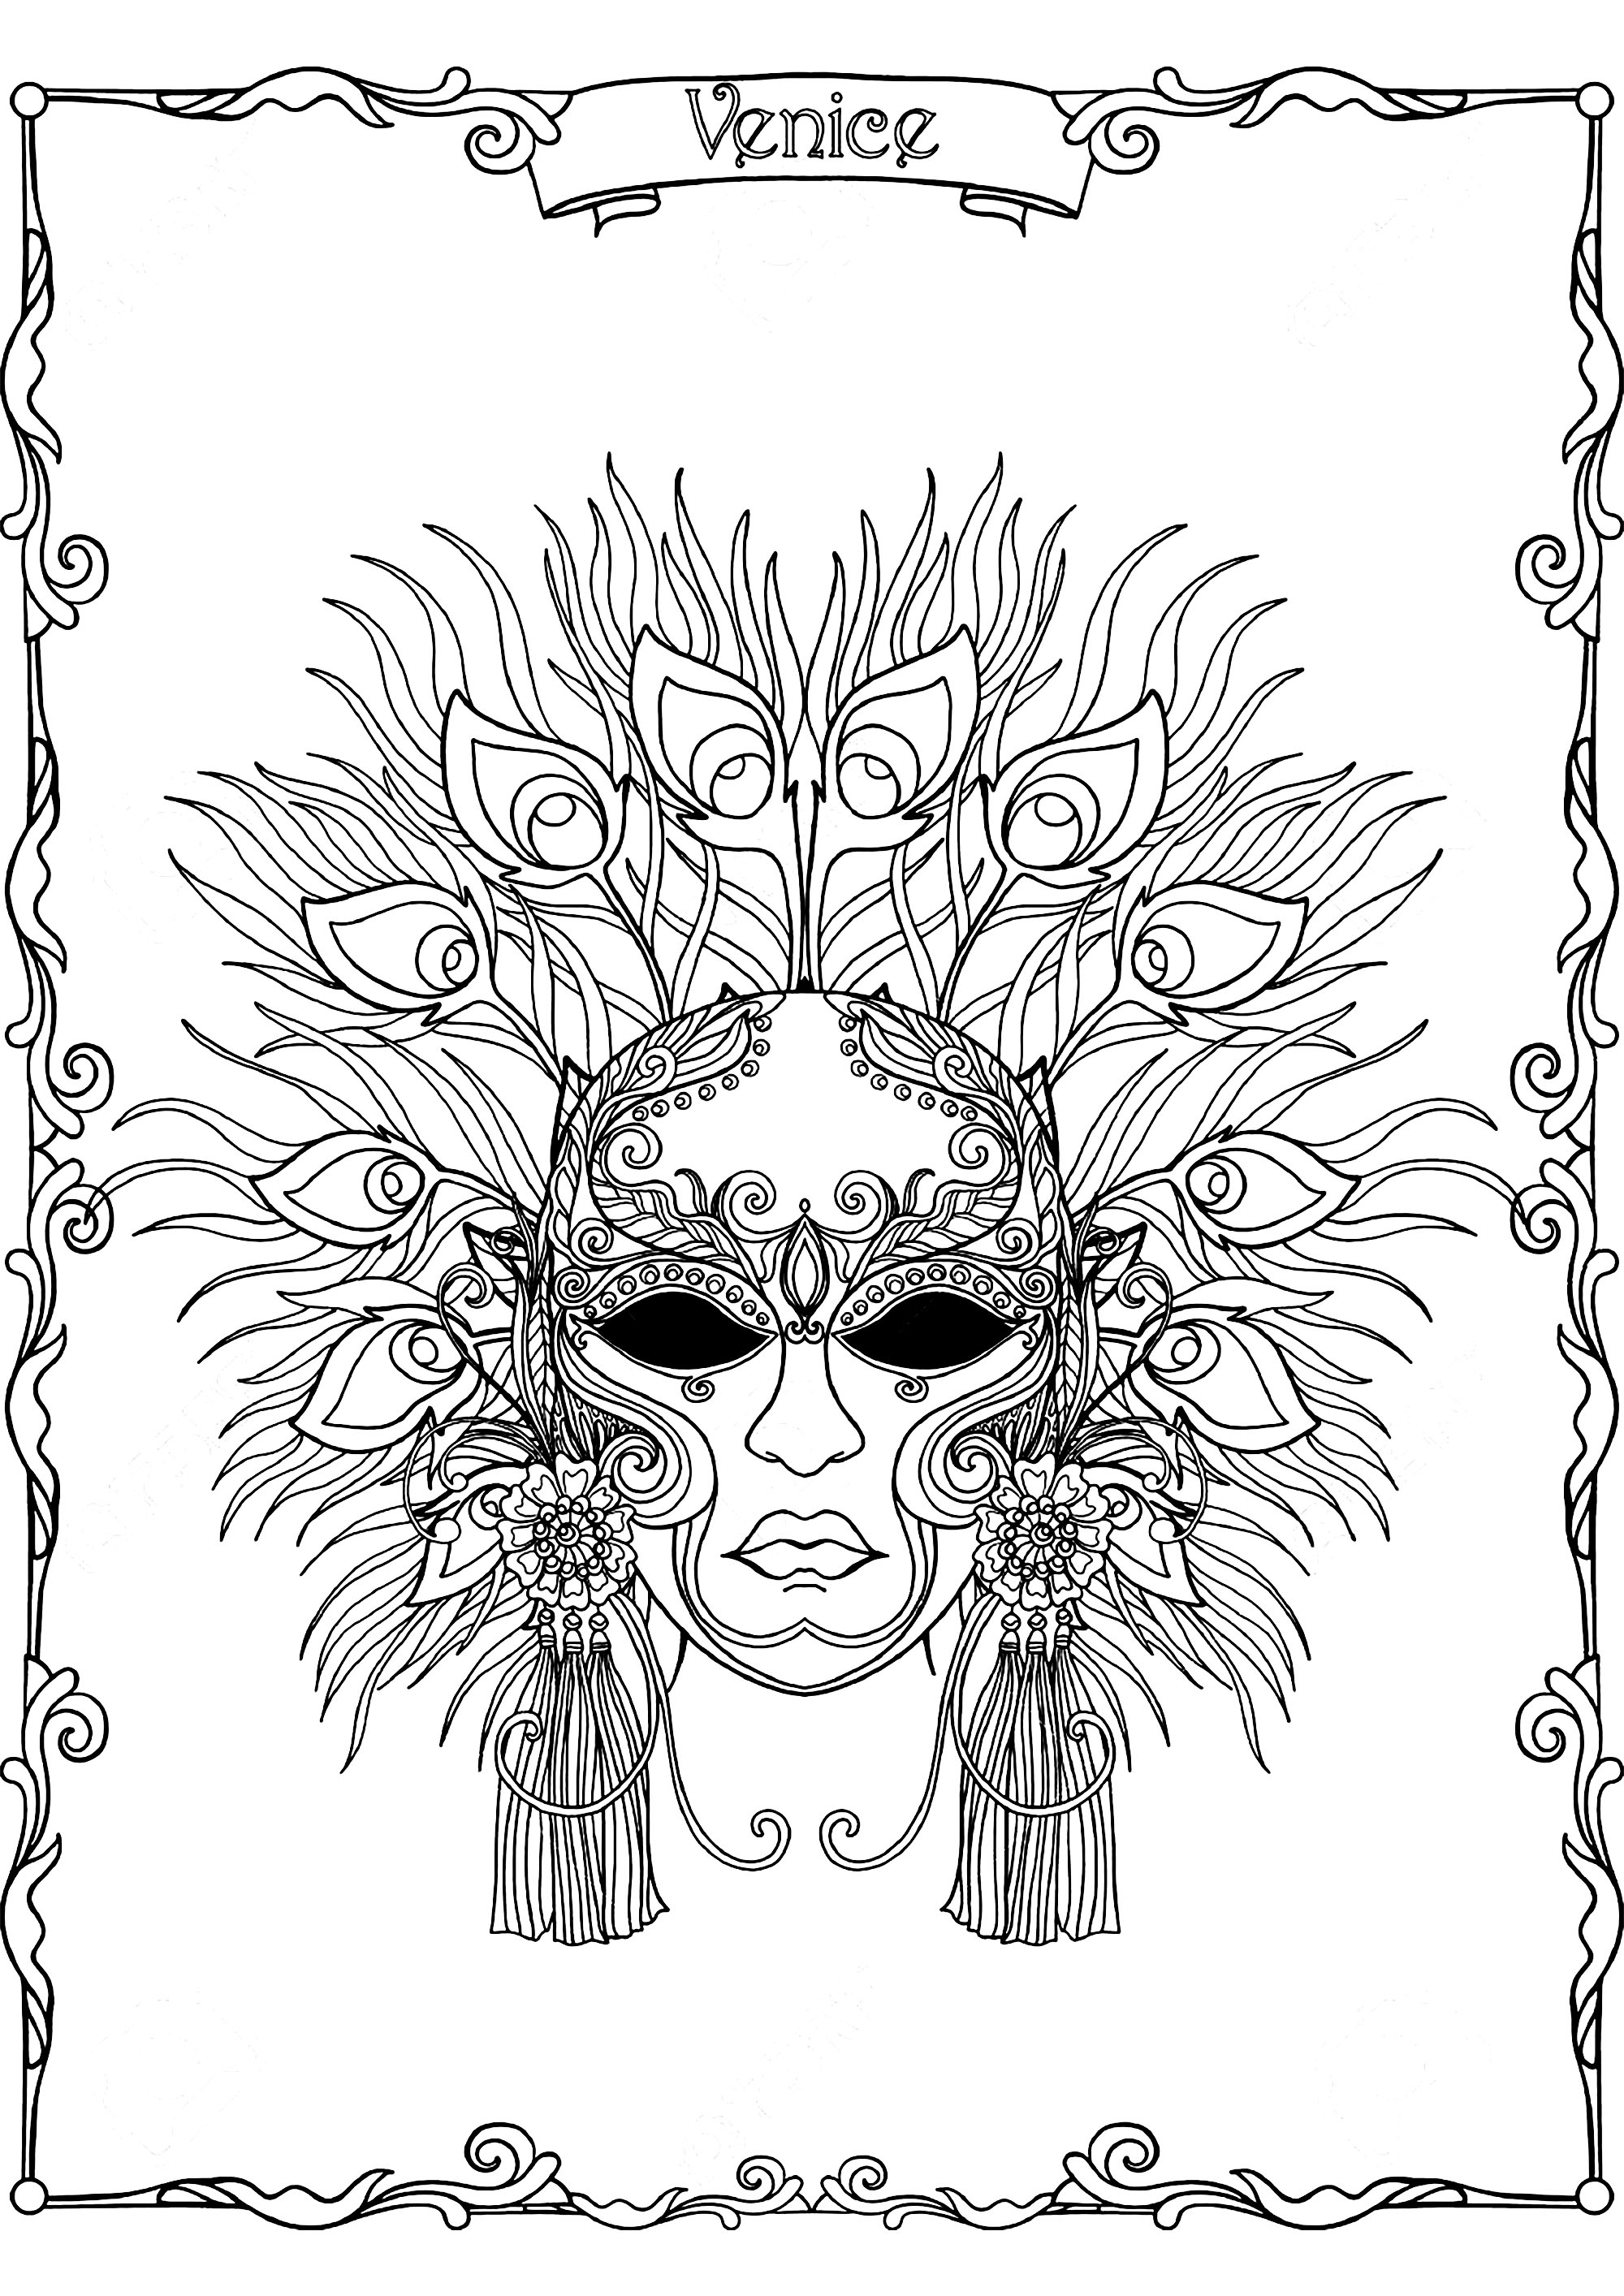 Bonita máscara de Carnaval com penas de pavão, do Carnaval de Veneza